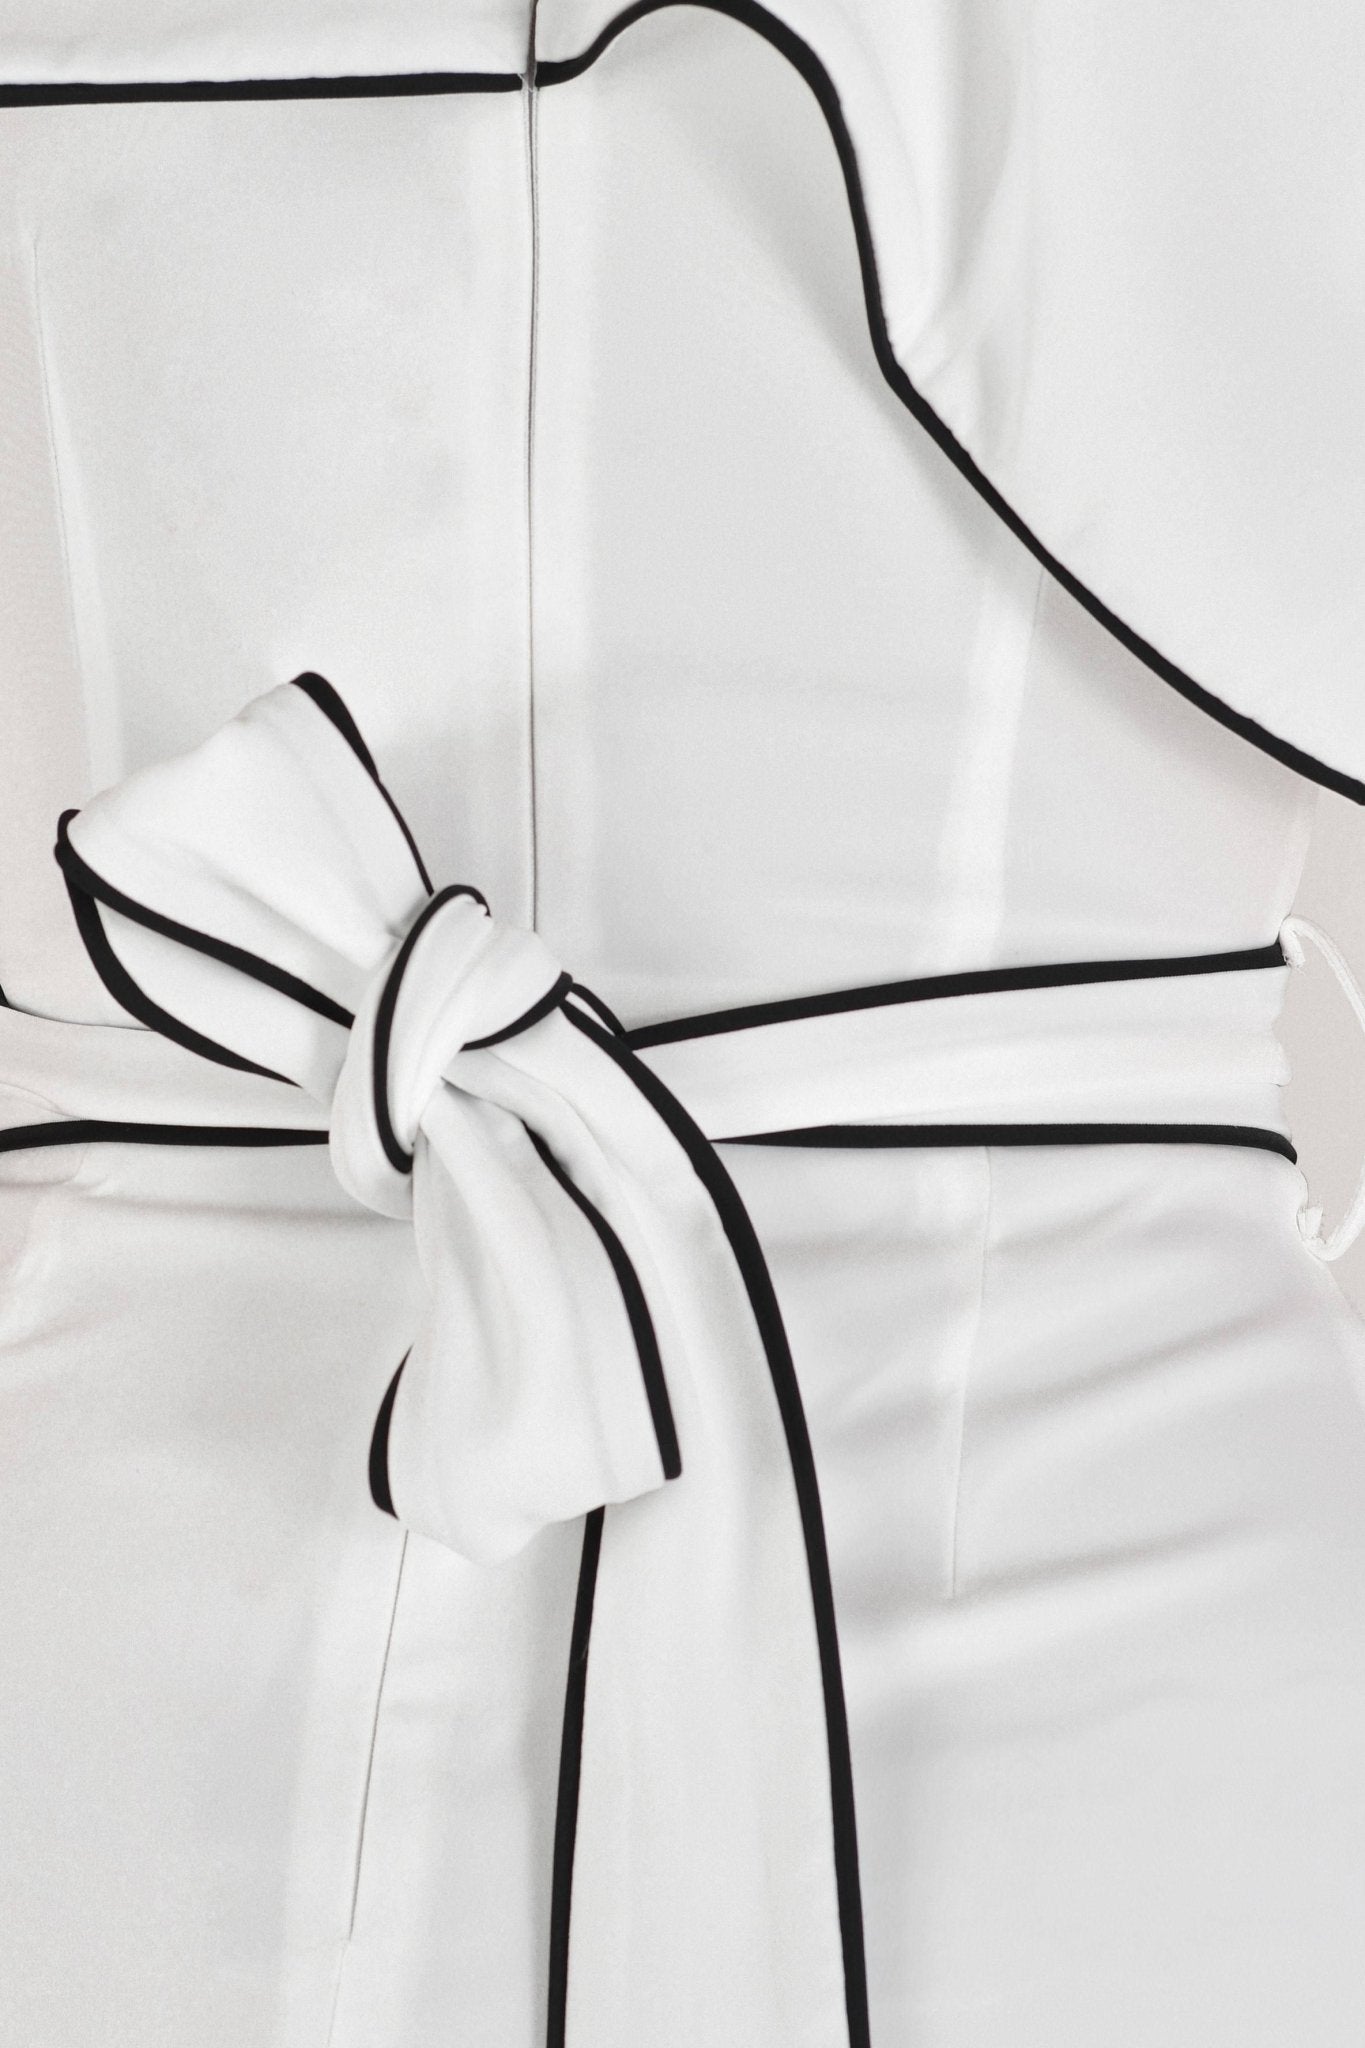 Zarah - vestido corto blanco - Lend the Trend renta de vestidos mexico